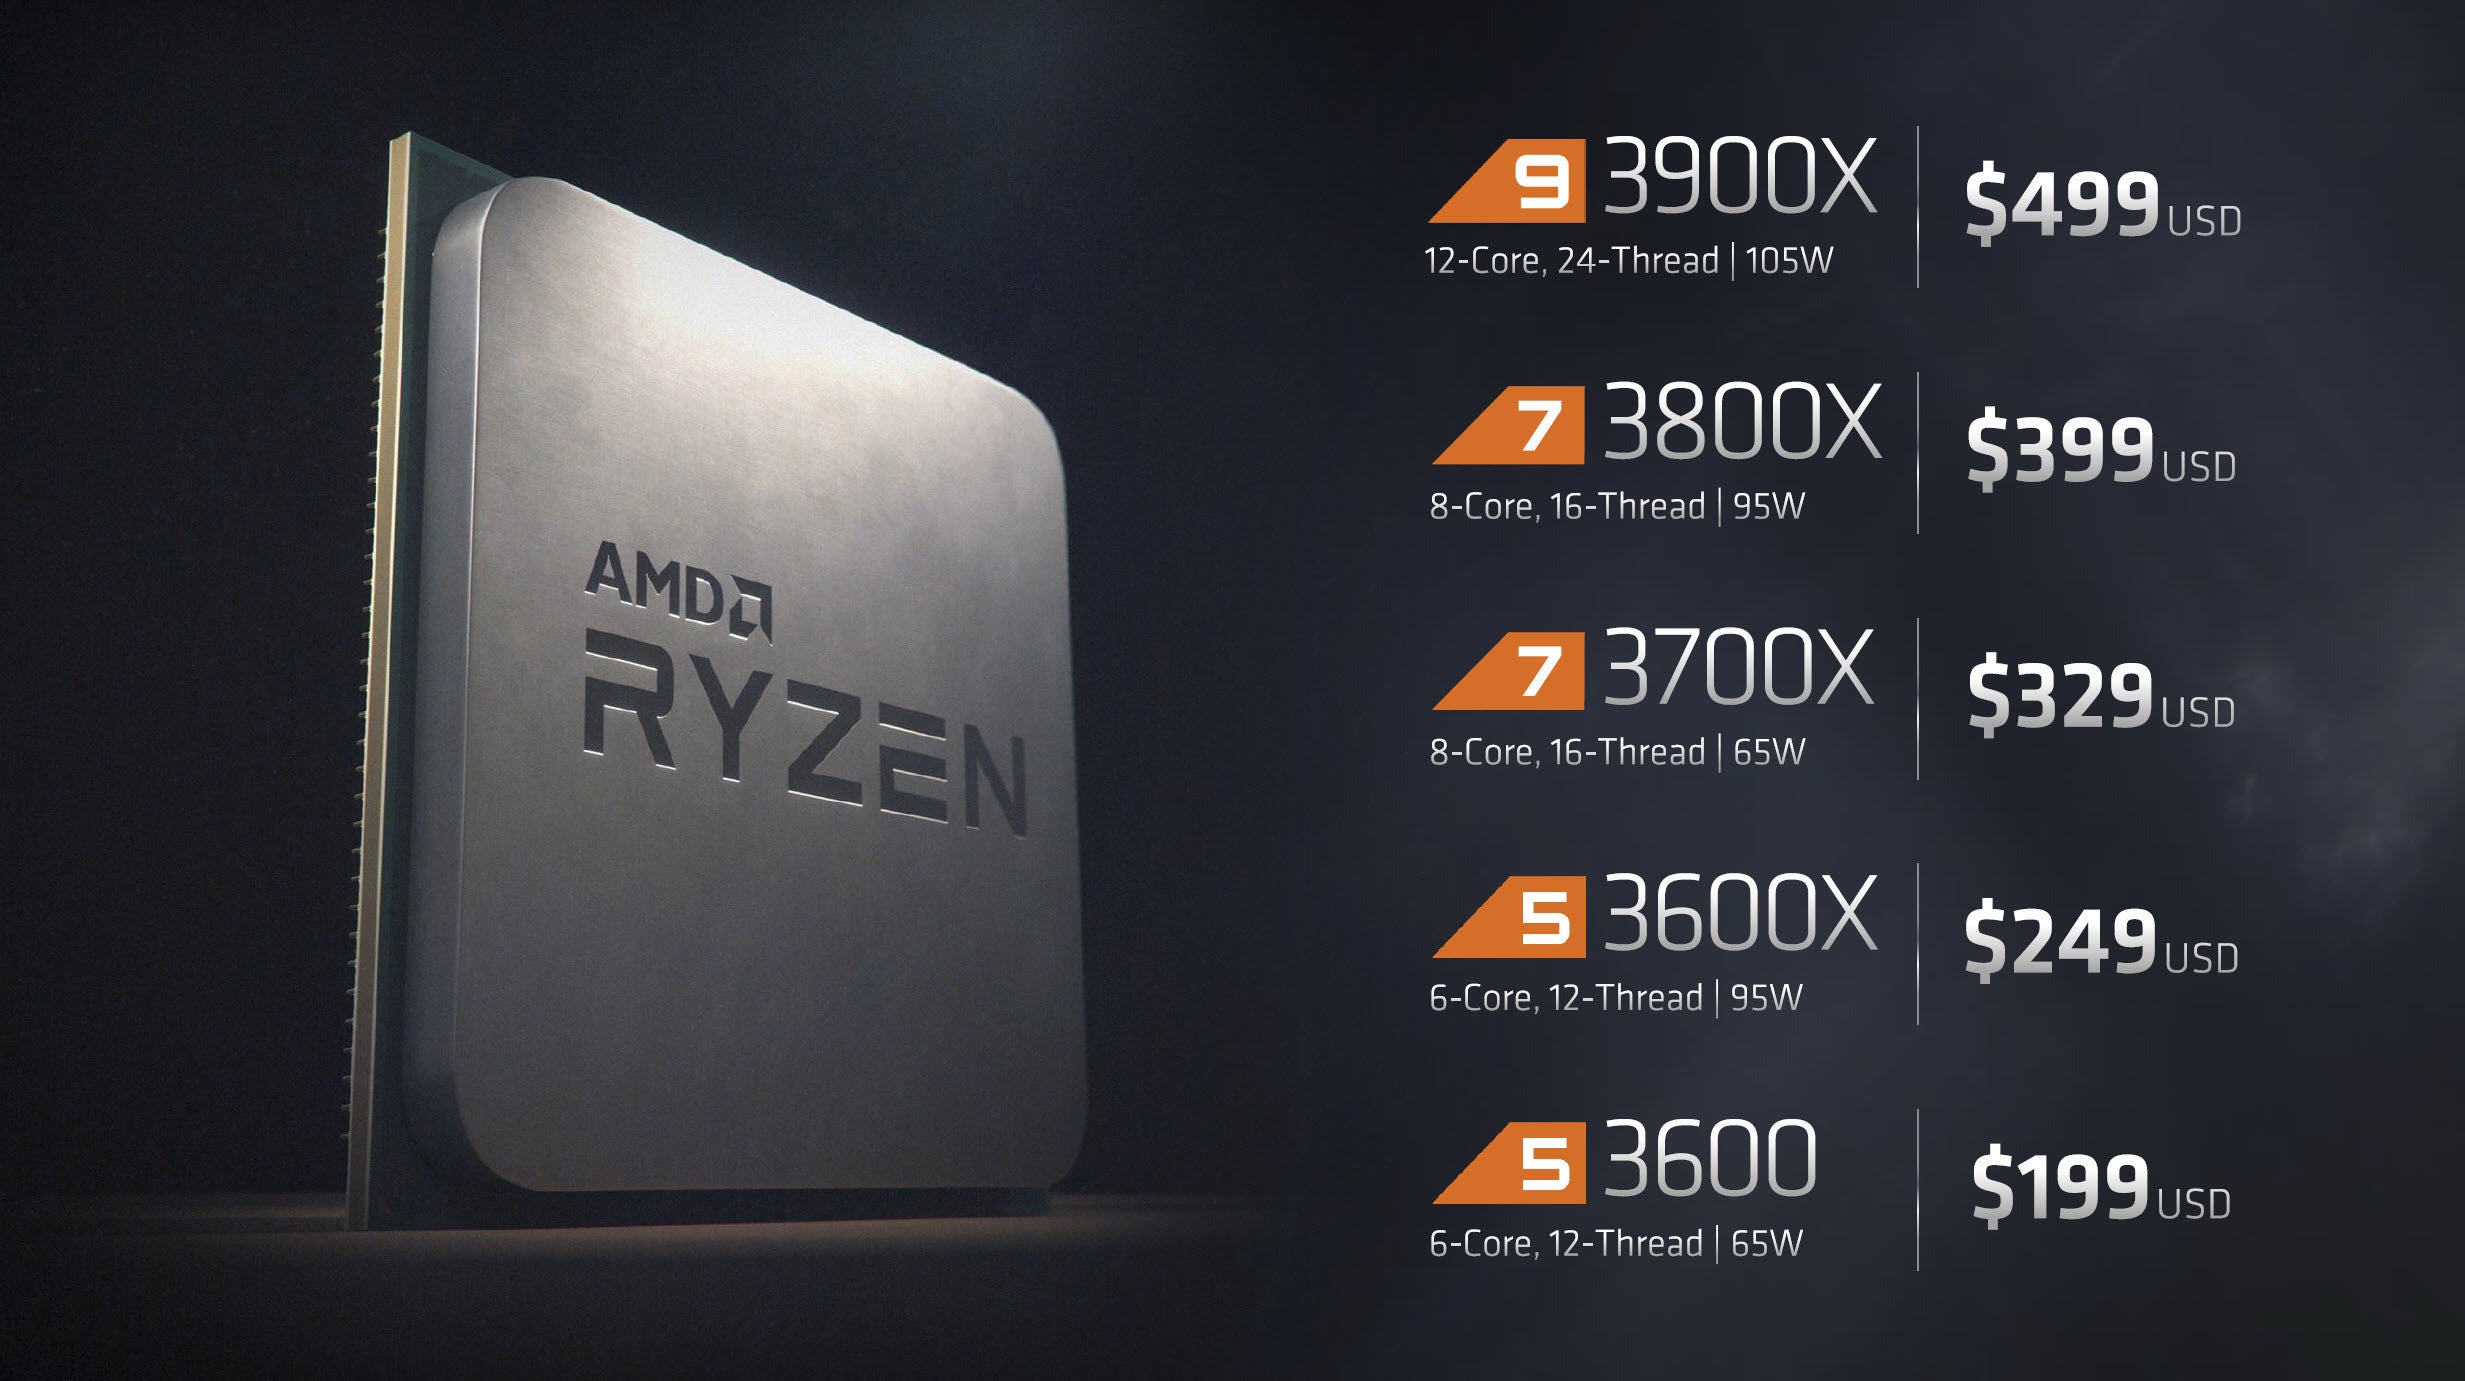 Ryzen 3000 Review: AMD's 12-core Ryzen 9 3900X conquers its past | PCWorld